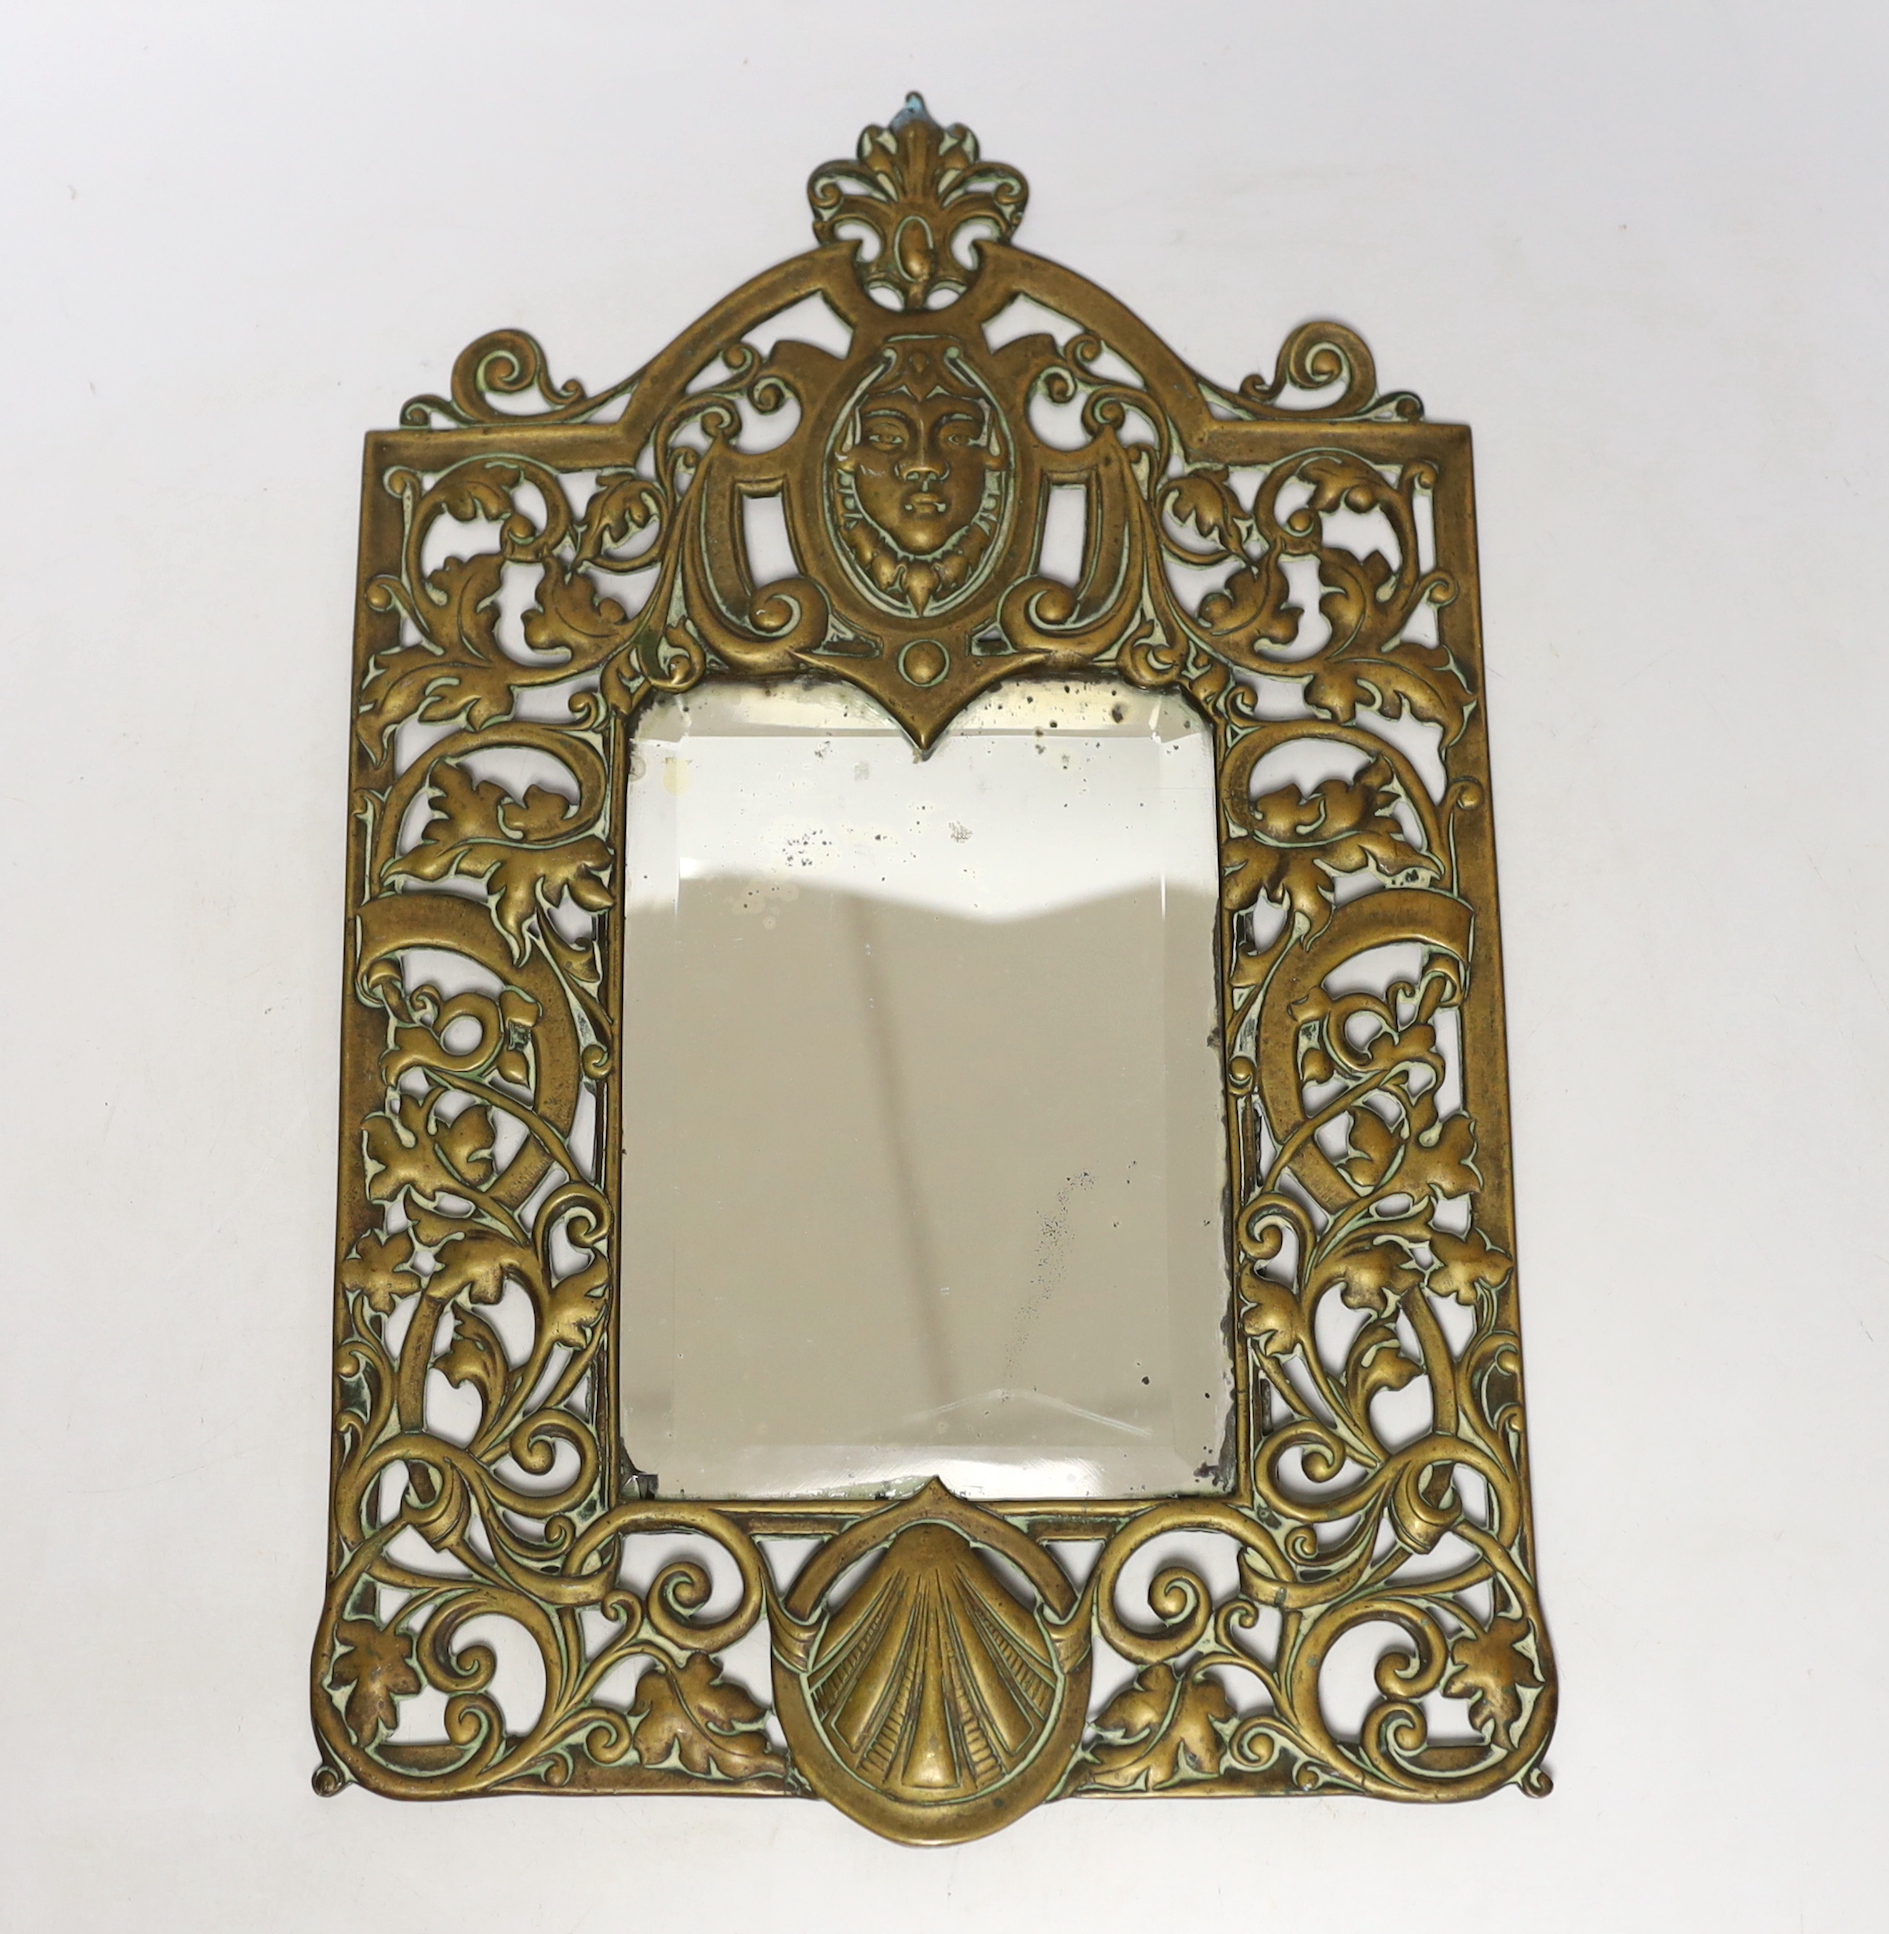 A brass framed mirror, 39cm high